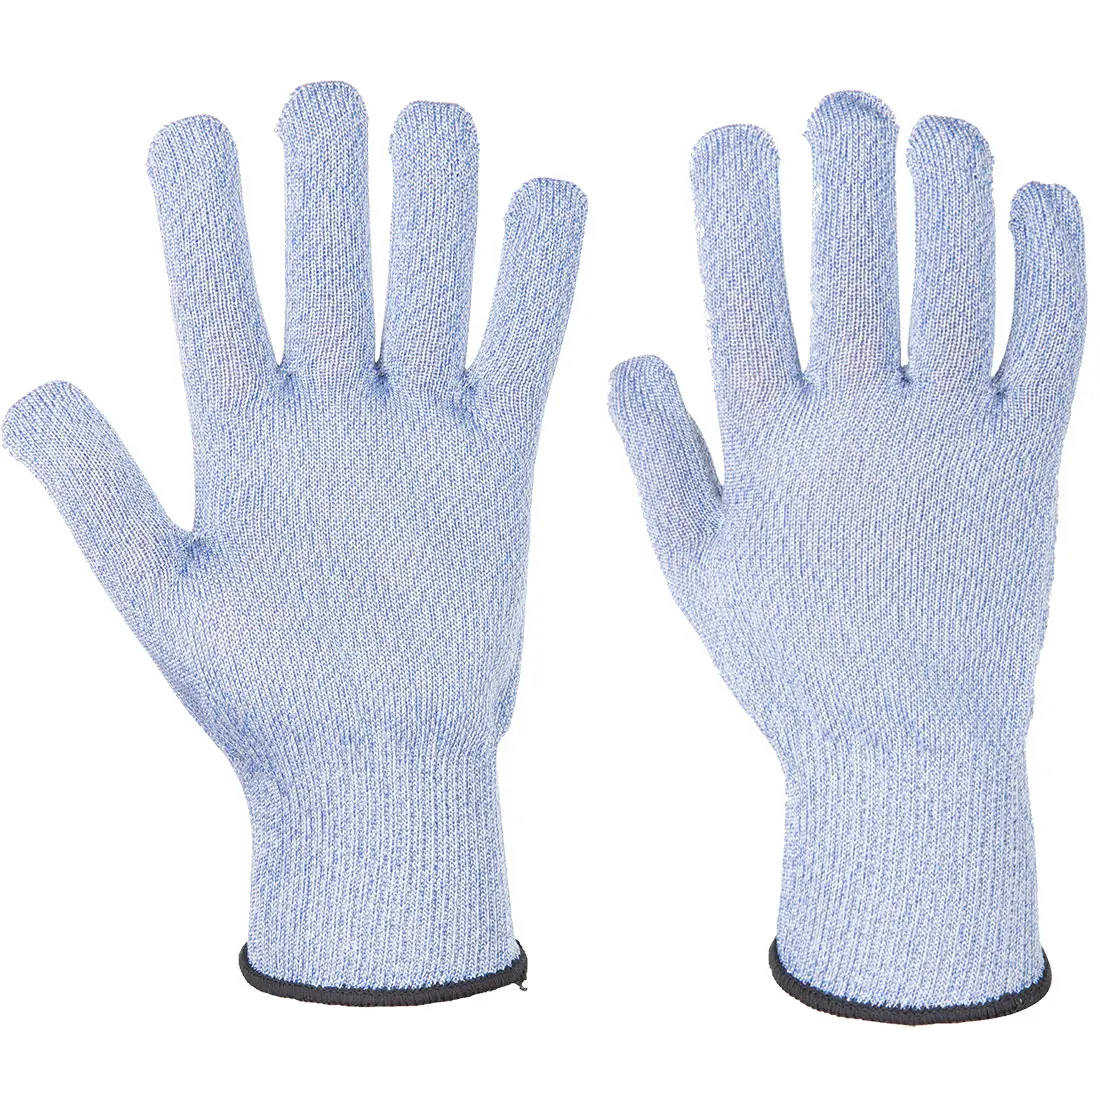 Антиразрезные перчатки для защиты рук от порезов